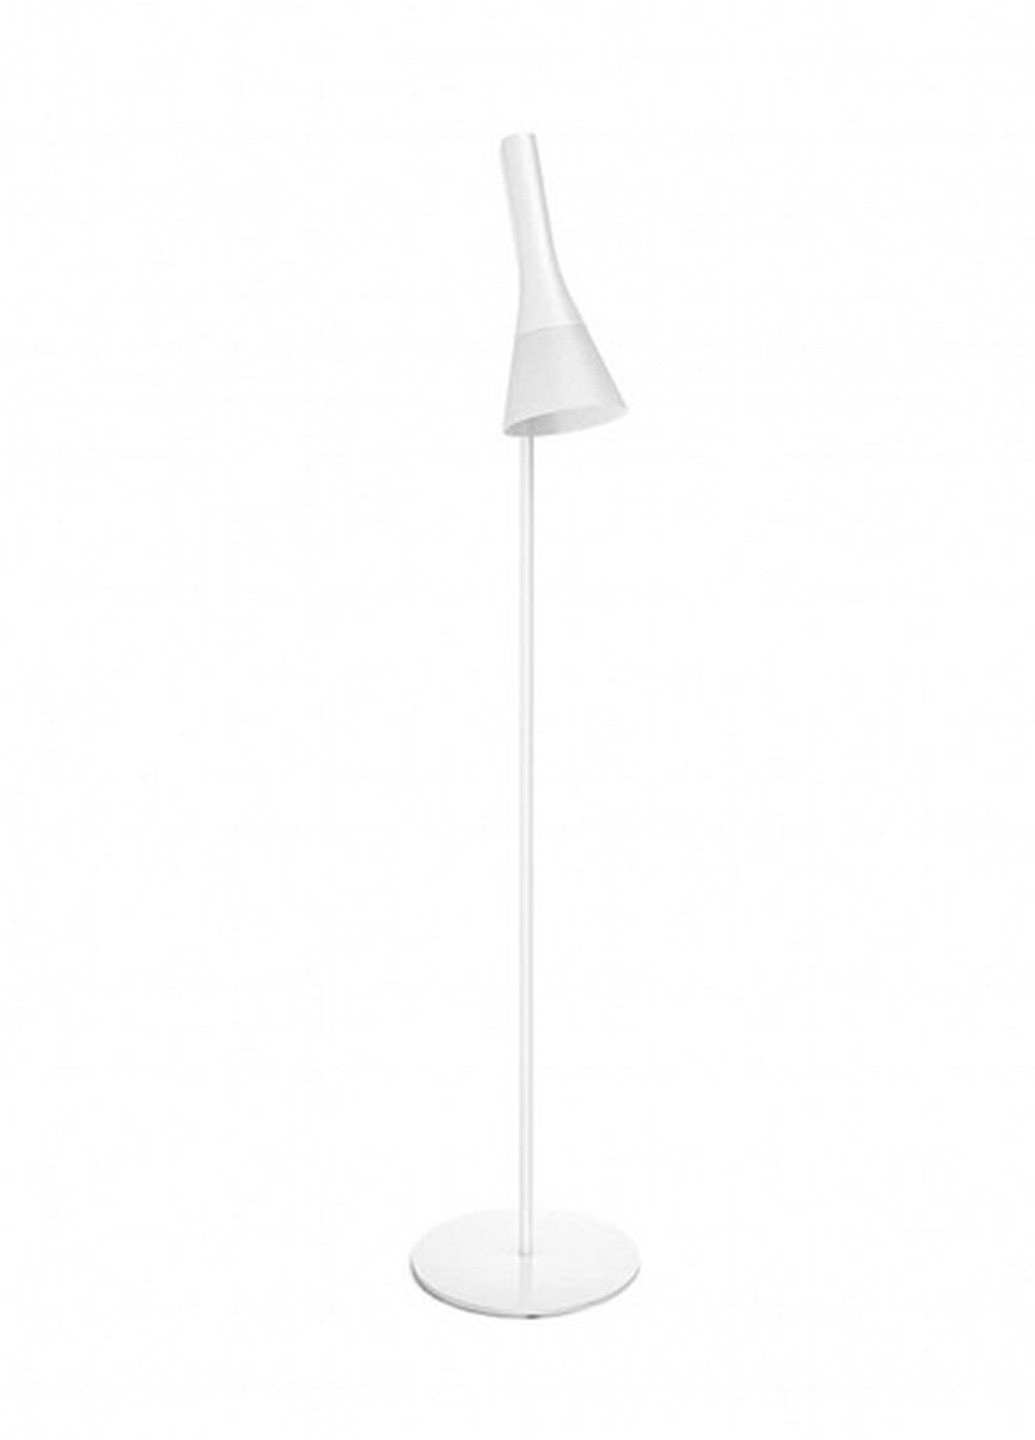 Смарт-светильник Explore Hue floor lamp white 1x9.5W 230V (43004/31/P7) Philips смарт explore hue floor lamp white 1x9.5w 230v (43004/31/p7) (142289809)